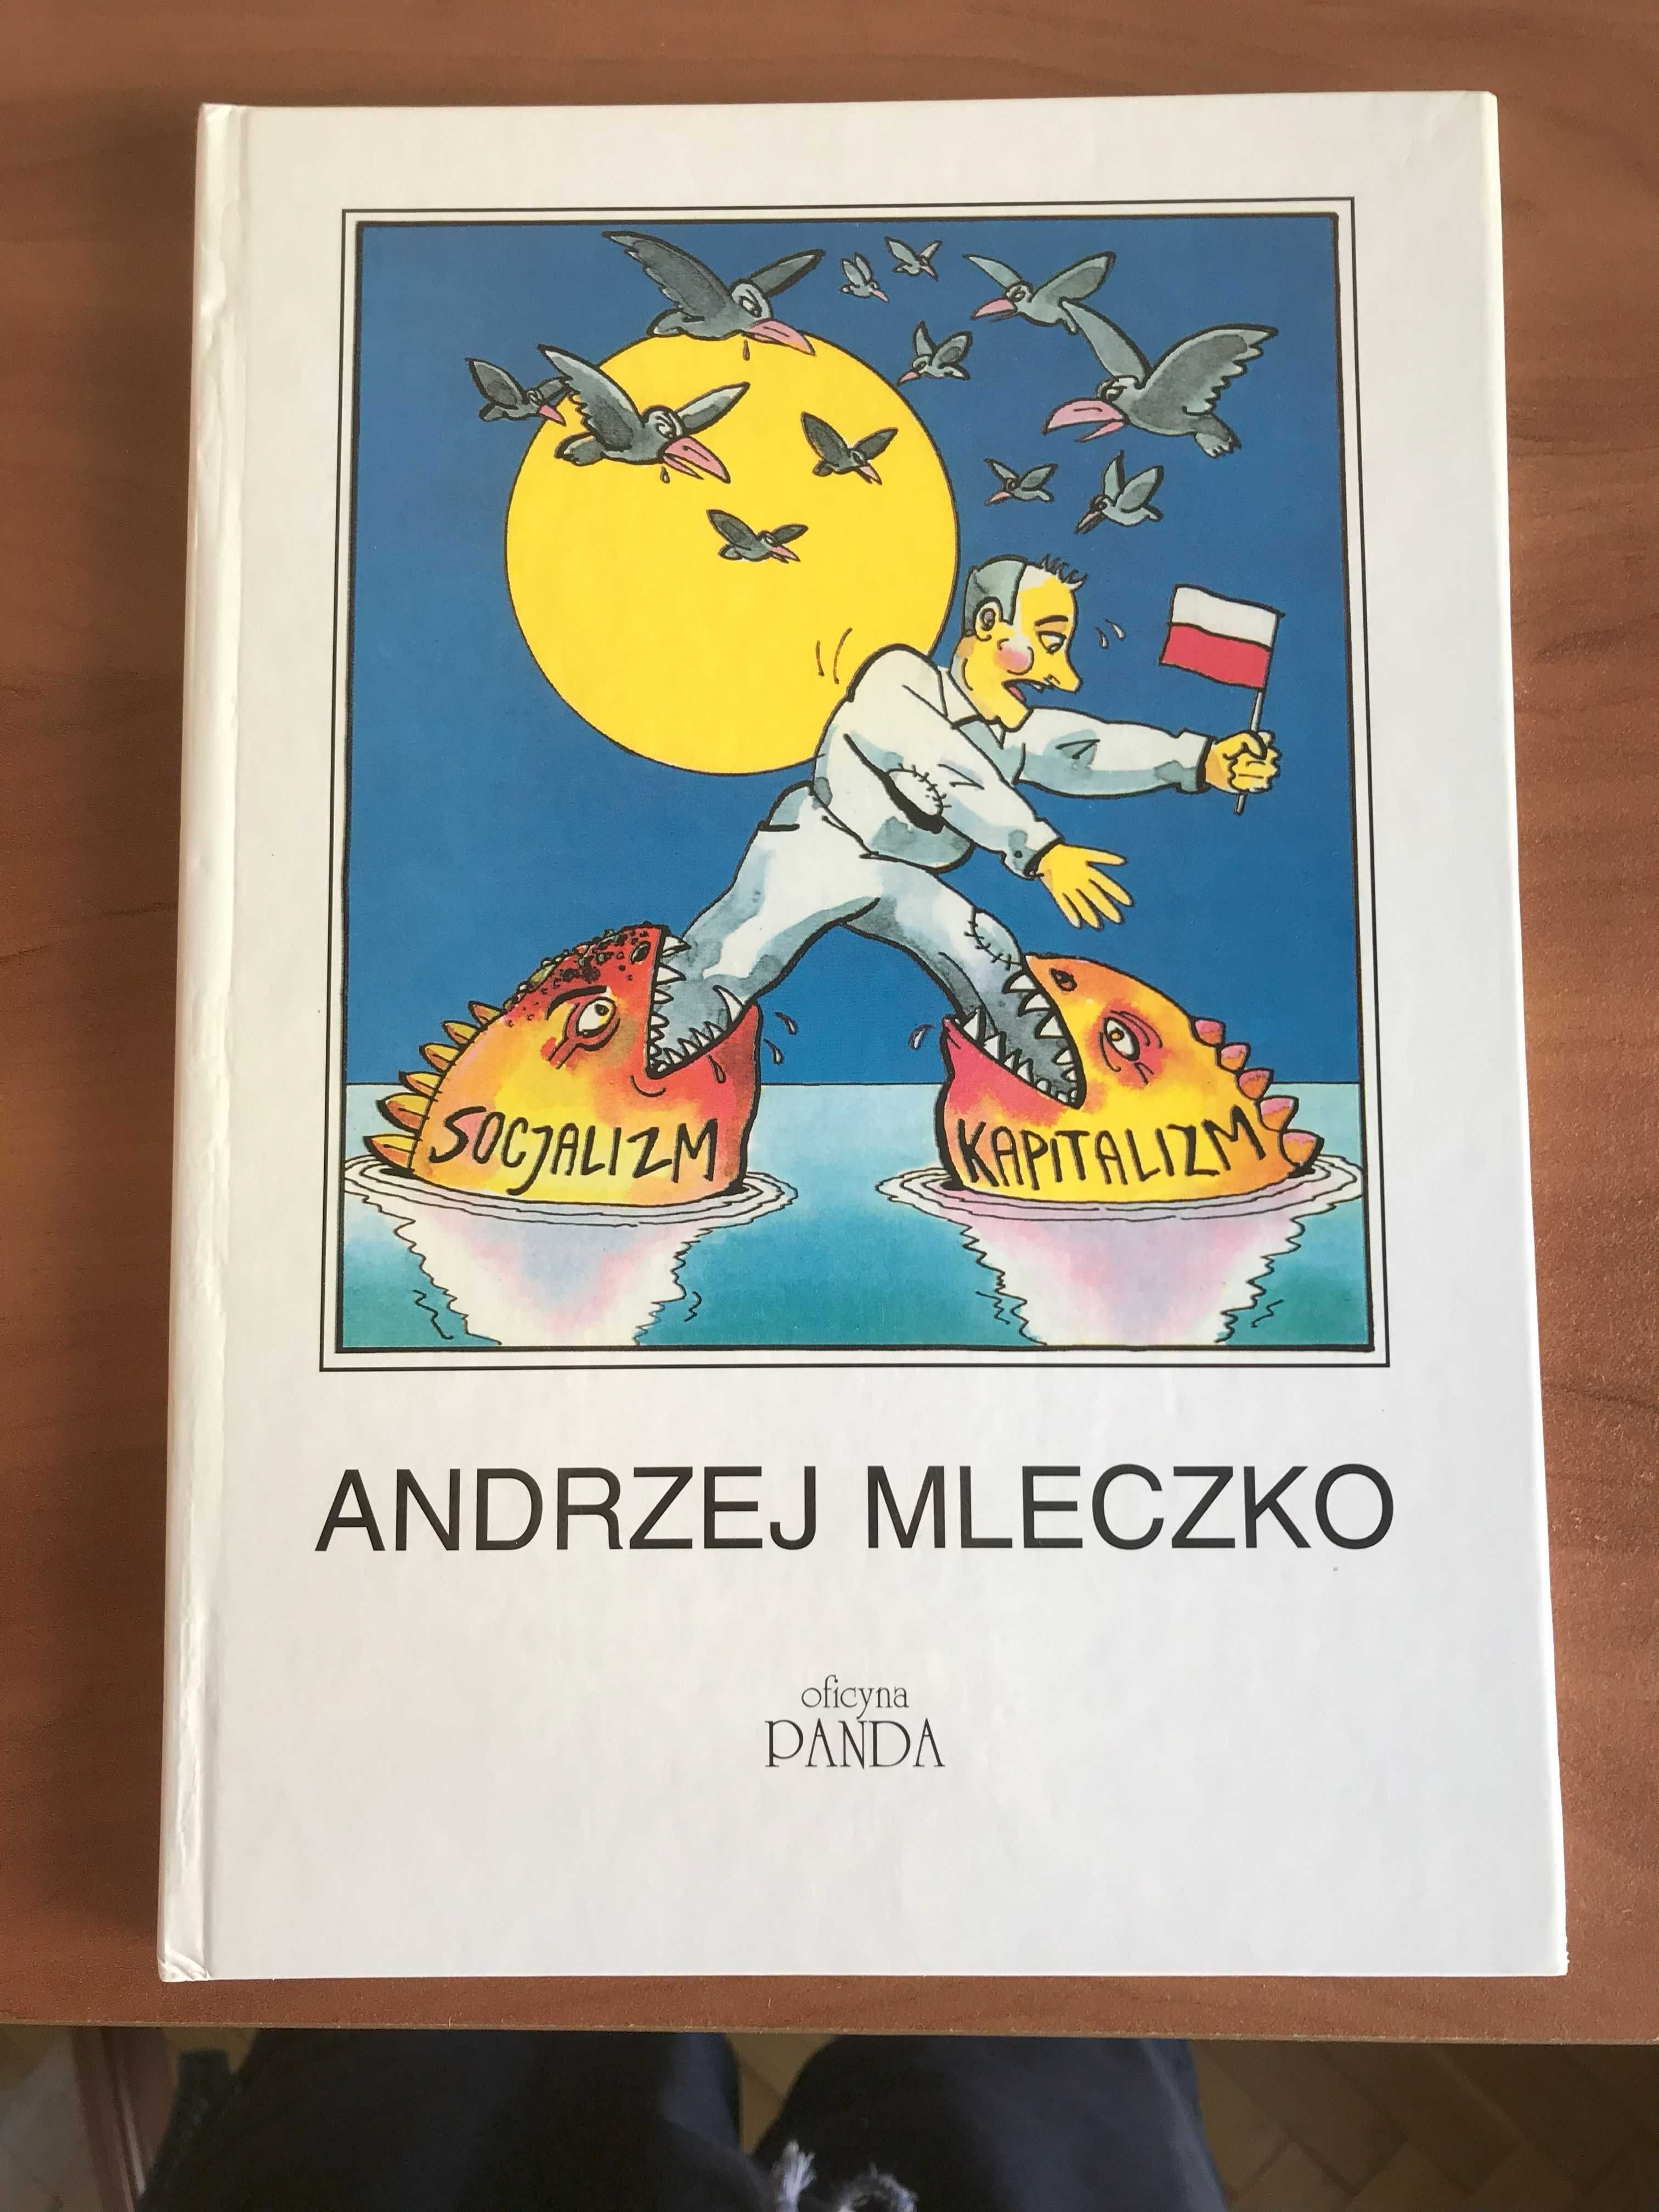 Andrzej Mleczko - Czarne na Białym